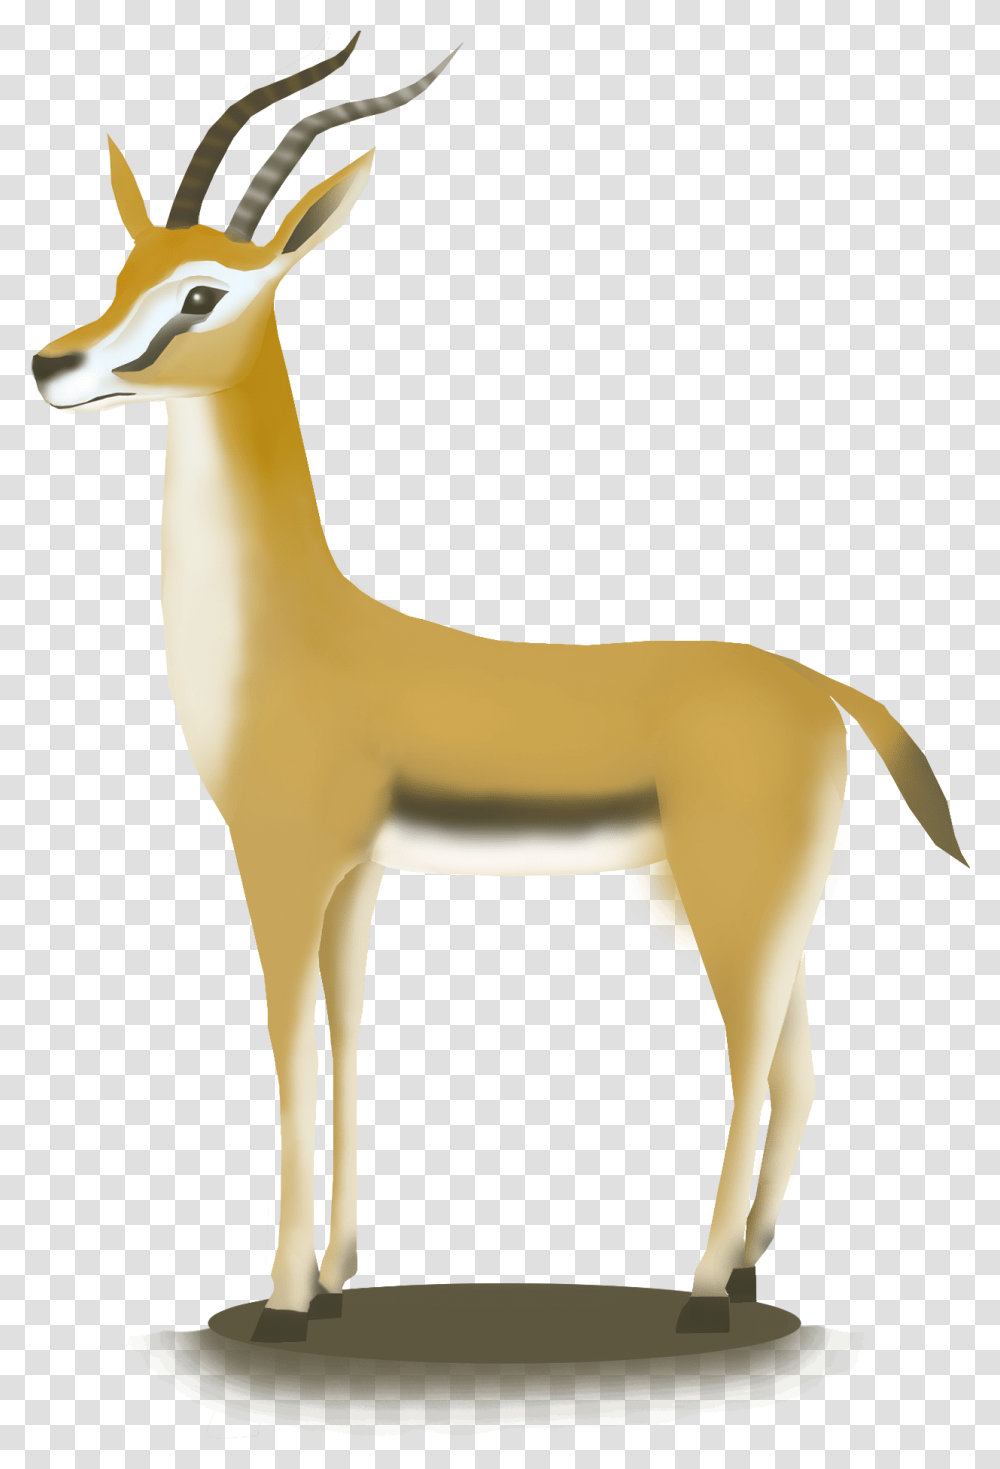 Hand Drawn African Antelope Hd Animal, Wildlife, Mammal, Gazelle, Impala Transparent Png